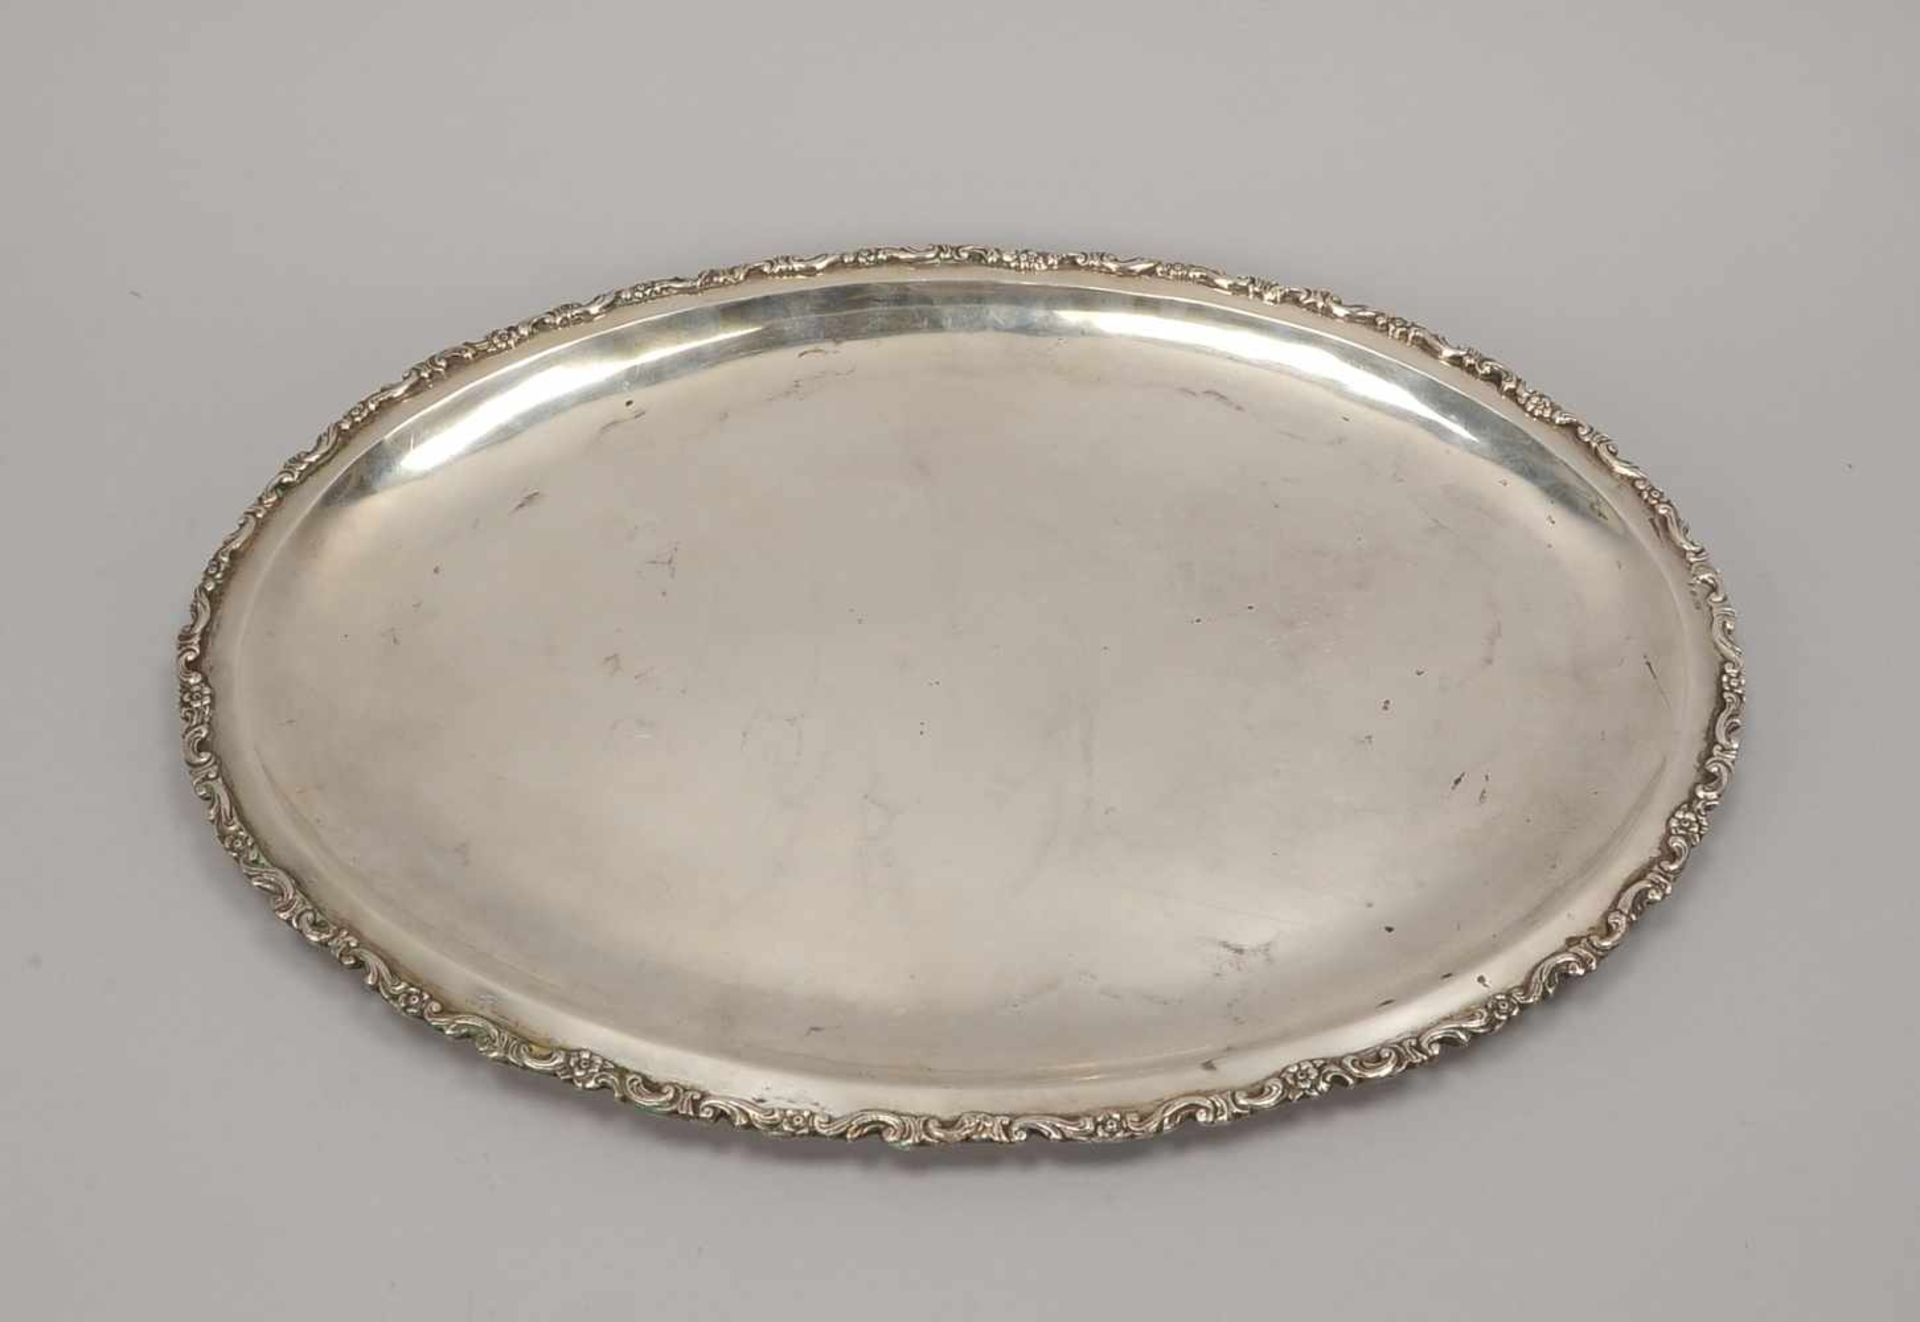 Silbertablett (wohl Polen), ovale Form, mit Reliefrand; Maße 45,5 x 34 cm, Gewicht 1.082 g